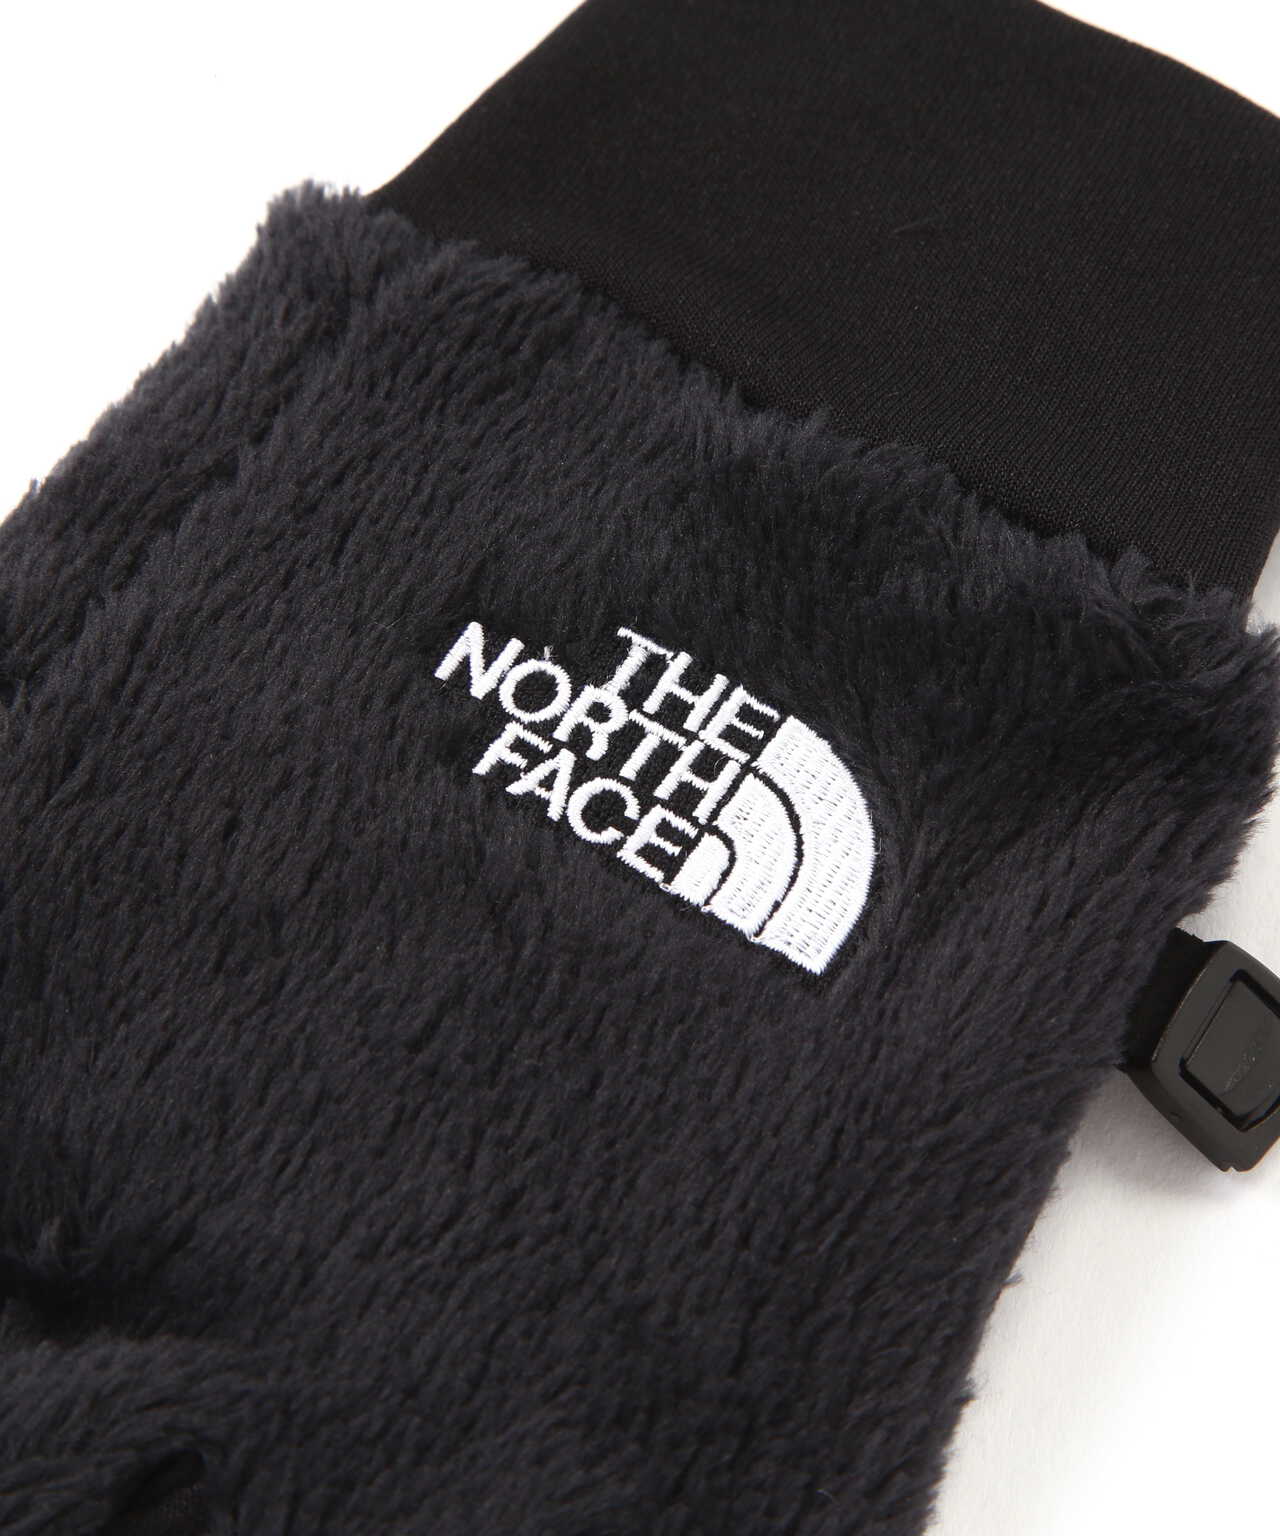 THE NORTH FACE (ザ・ノースフェイス）Versa Loft Etip Glove バーサ